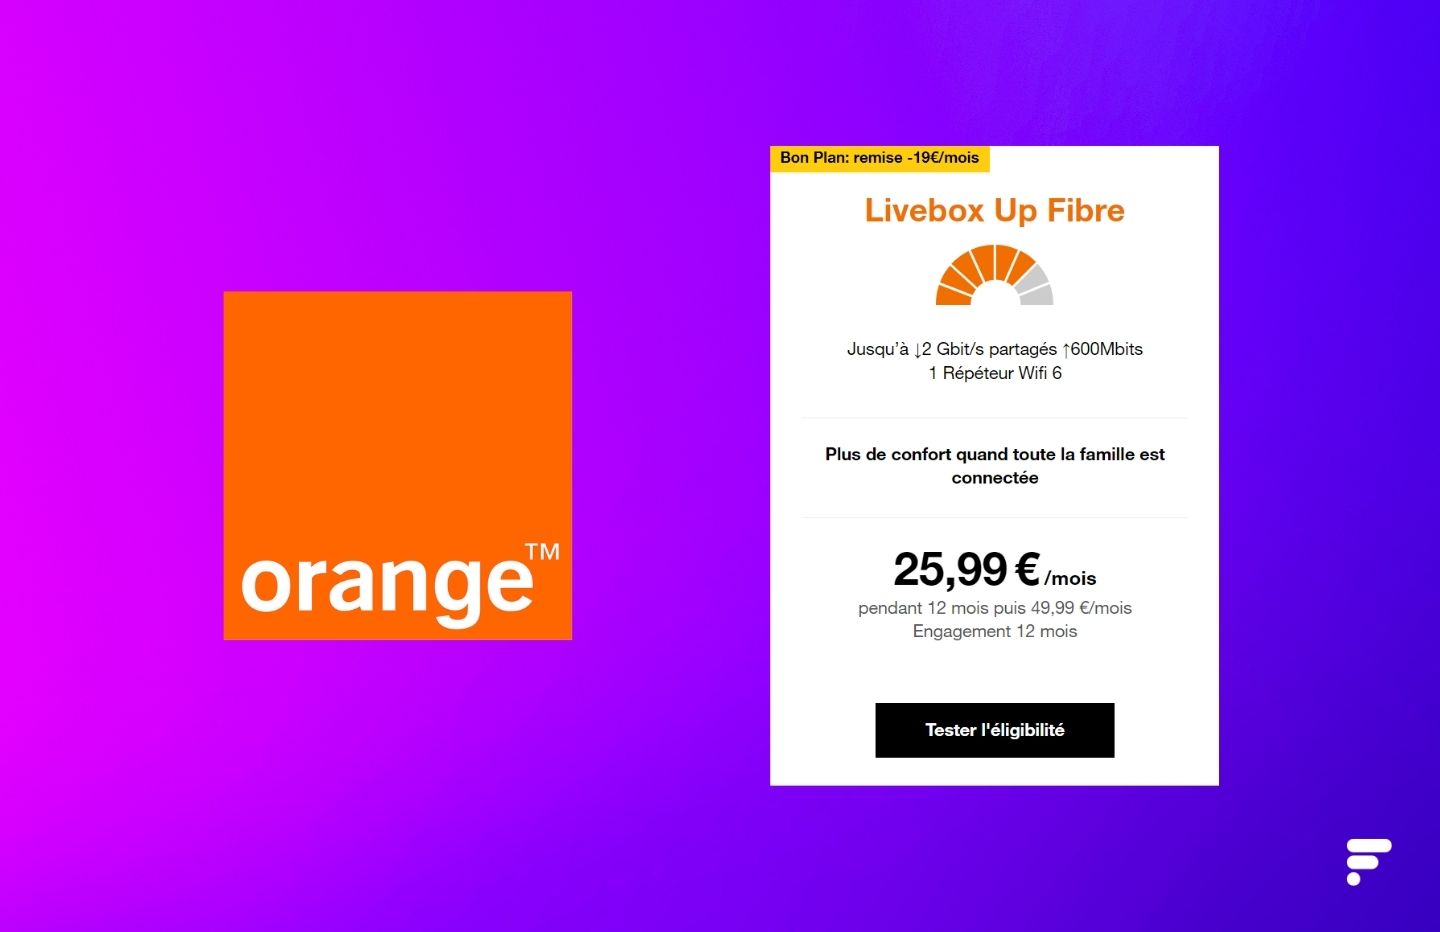 Orange baisse le prix mensuel de son offre Livebox Up Fibre (jusqu'à 2  Gbit/s)